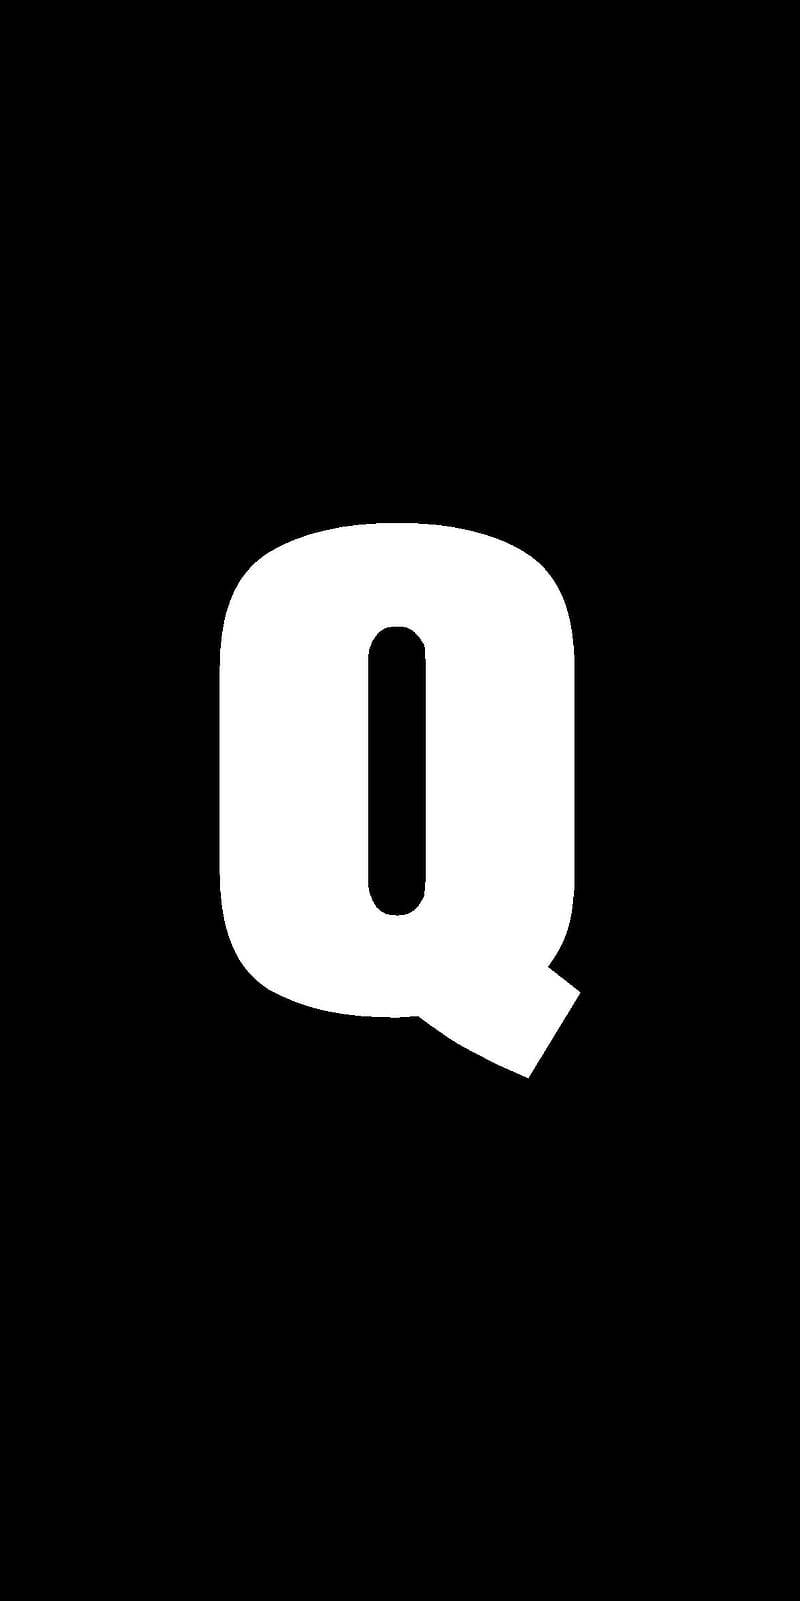 Black And White Letter Q